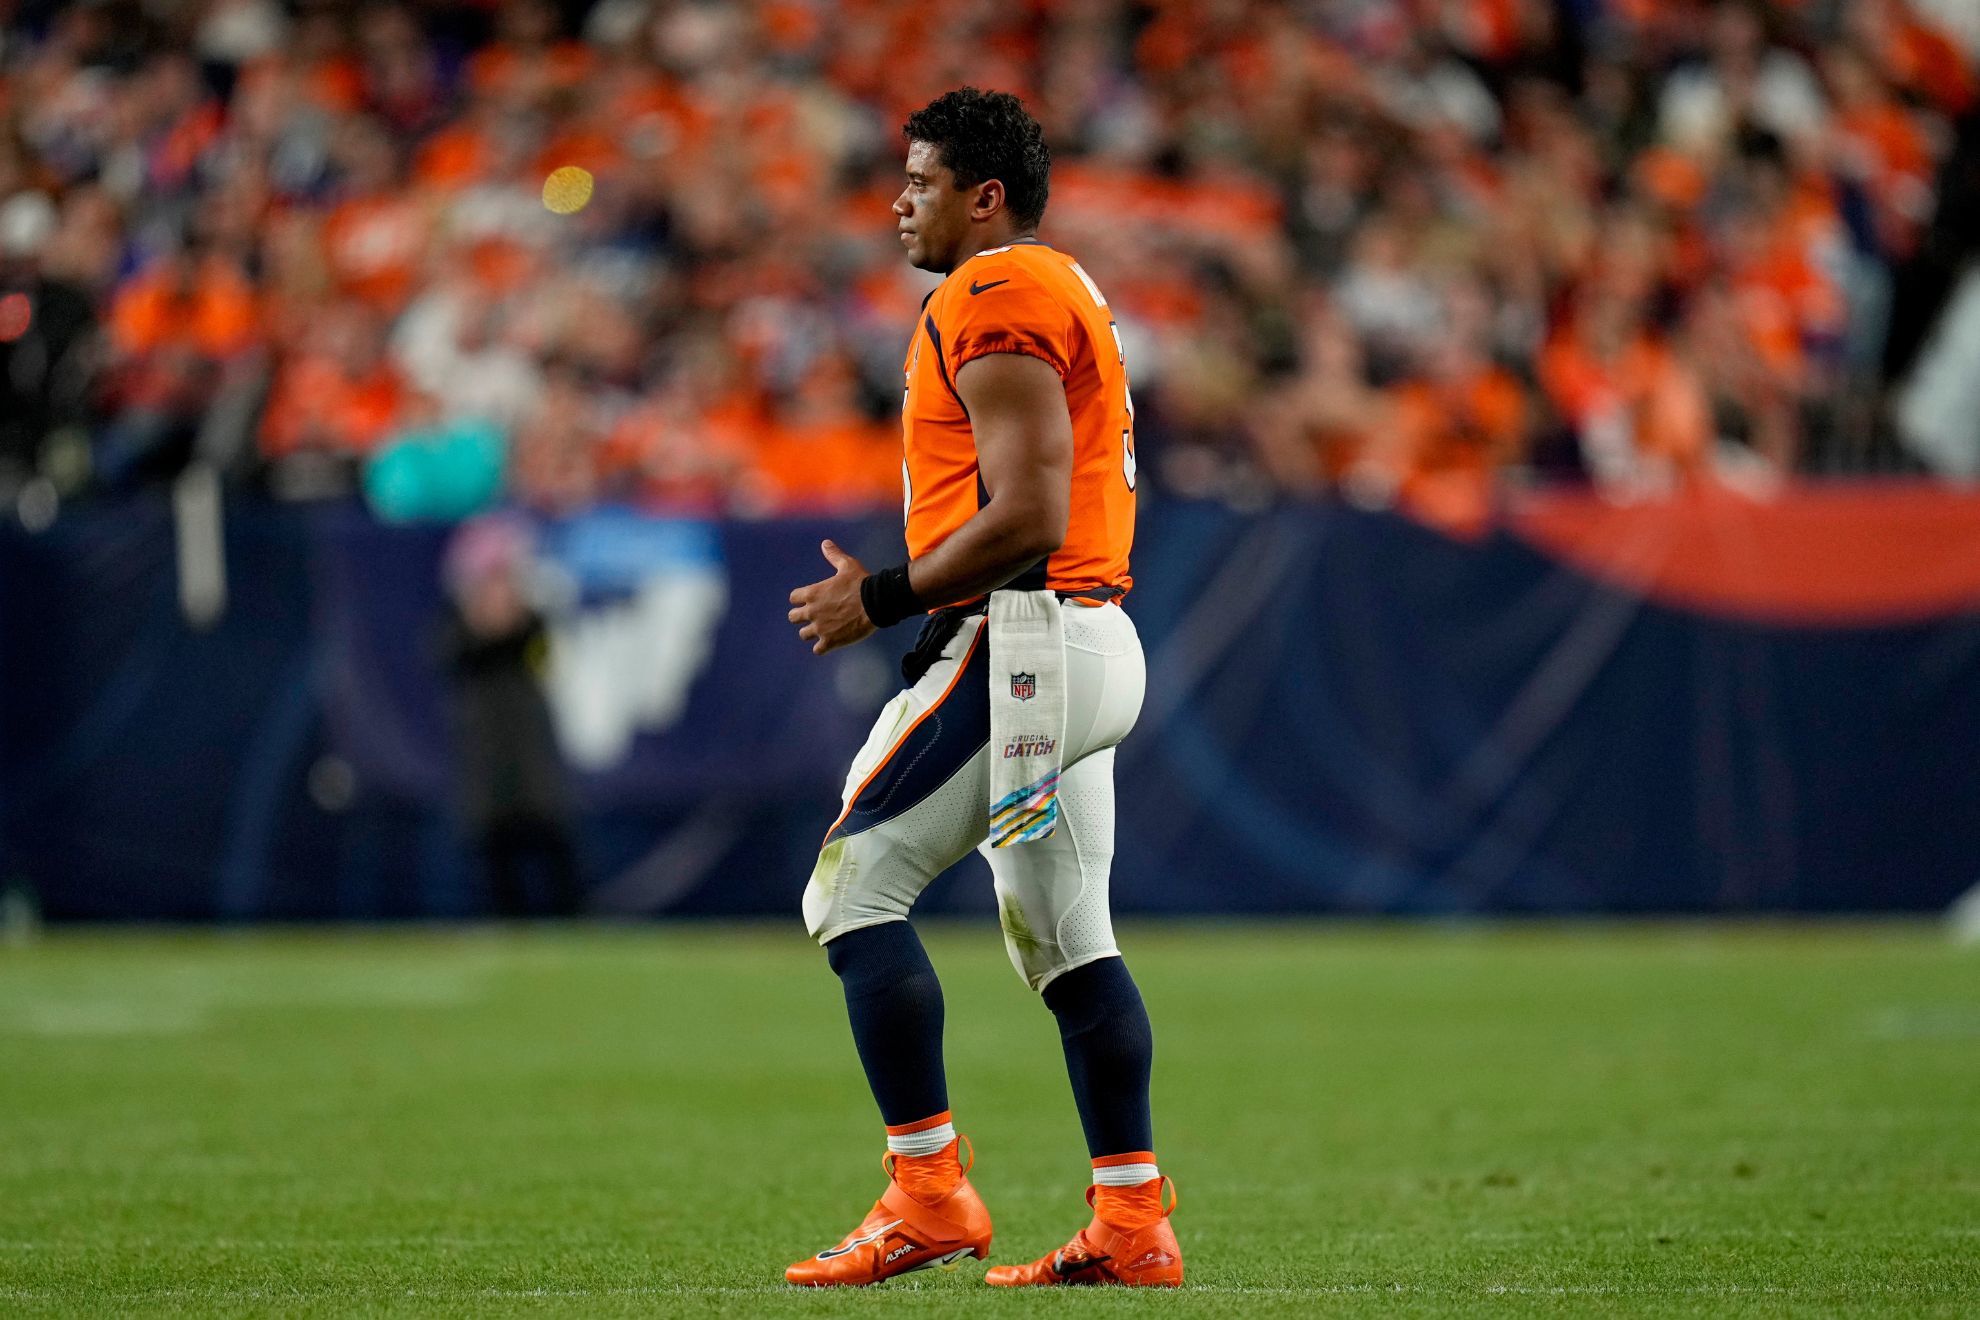 Russell Wilson, Denver Broncos quarterback / AP